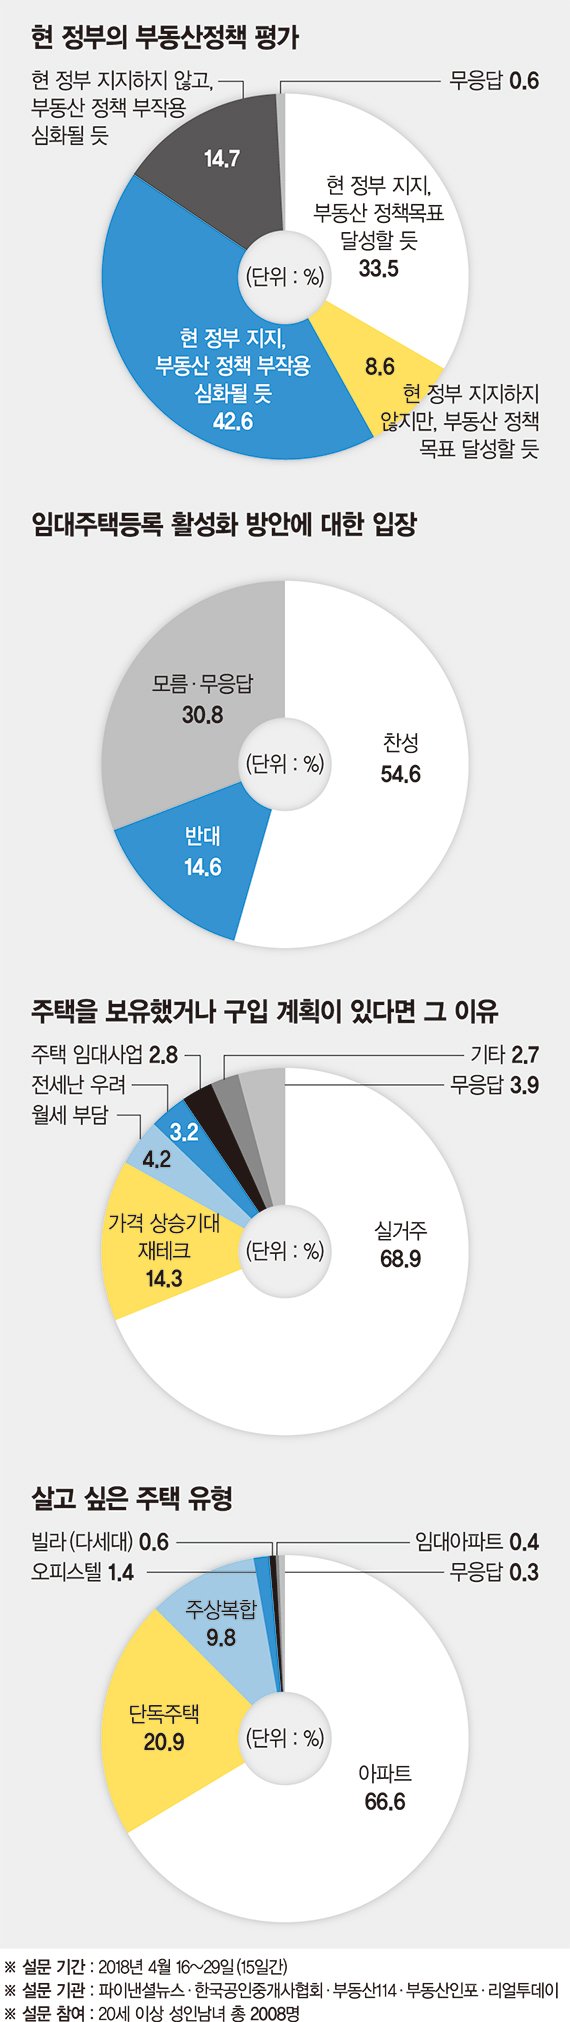 [제18회 fn하우징·건설 파워브랜드 대상] "文정부 지지하지만 부동산 정책 부작용 커질 것" 43%